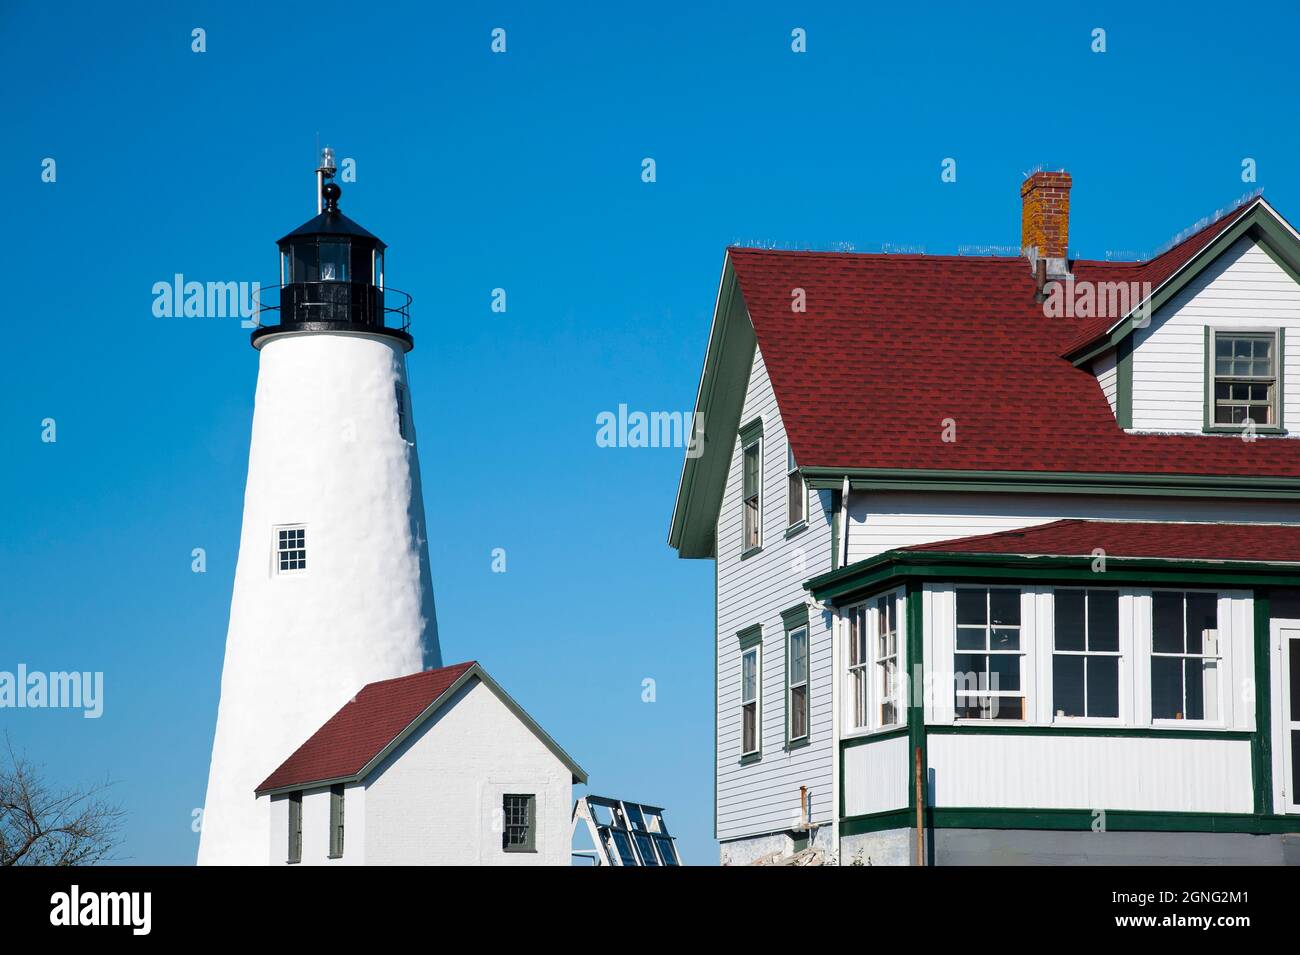 Der Leuchtturm von Bakers Island wurde für Touristen, die die Insel in Salem, Massachusetts, besuchen möchten, umgebaut. Führungen werden während der Sommermonate angeboten. Stockfoto